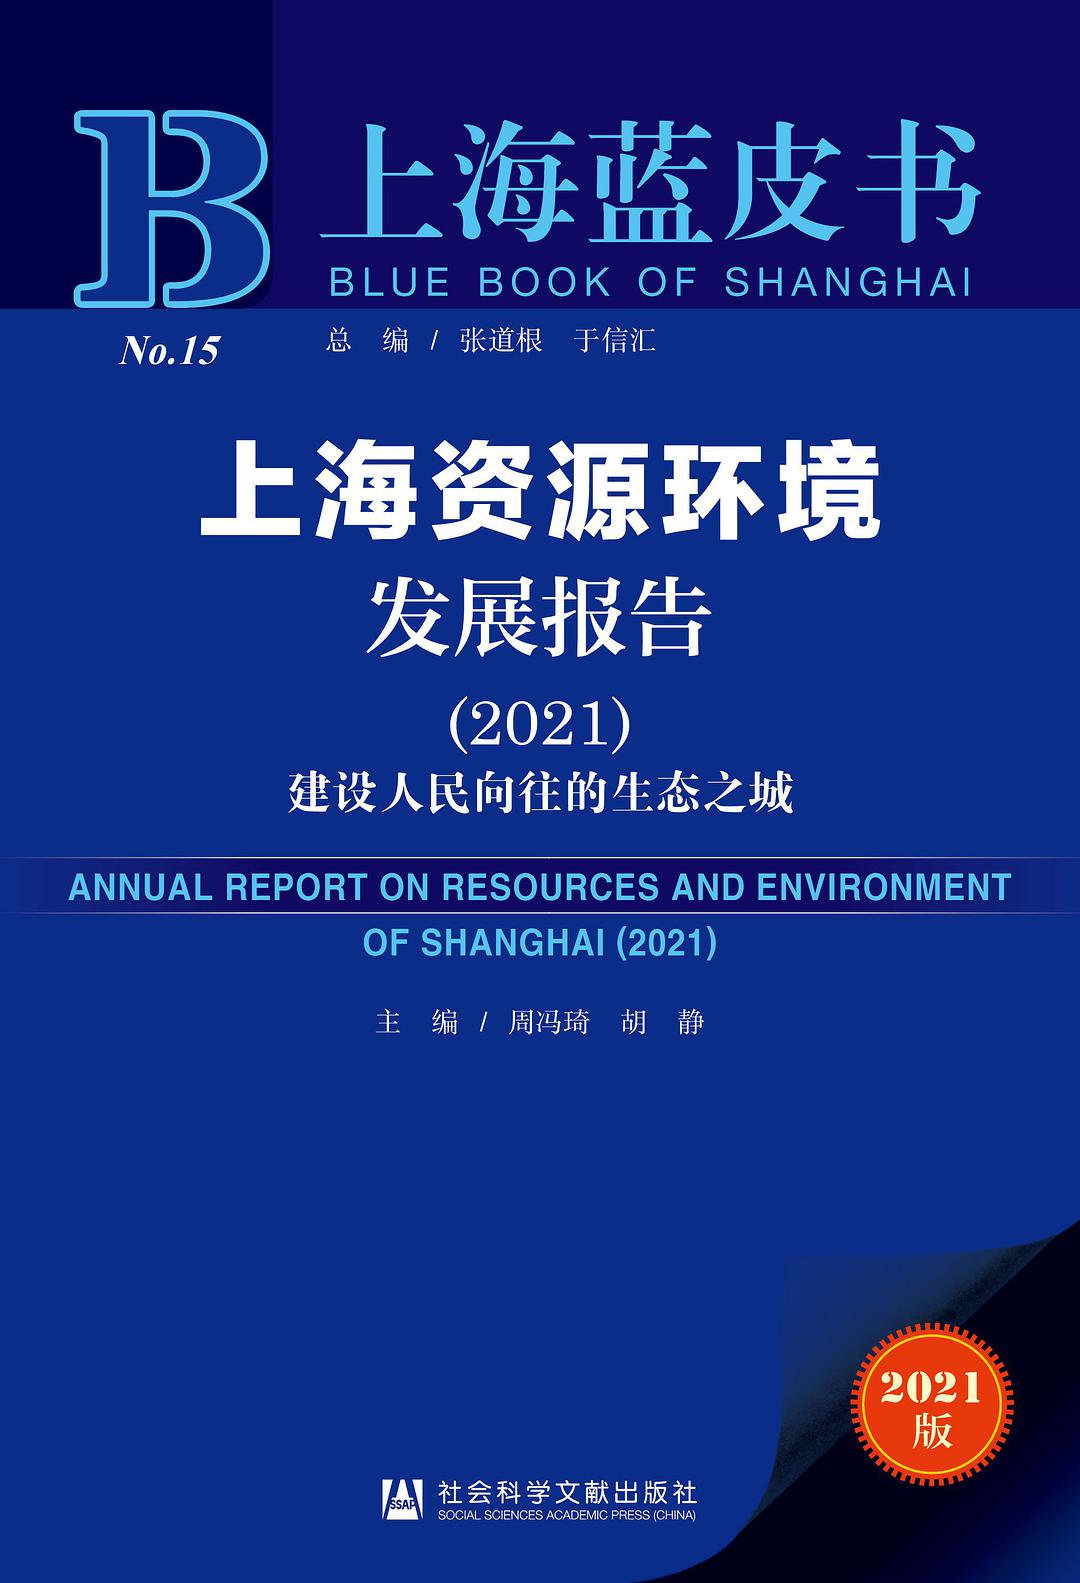 上海资源环境发展报告. 2021, 建设人民向往的生态之城